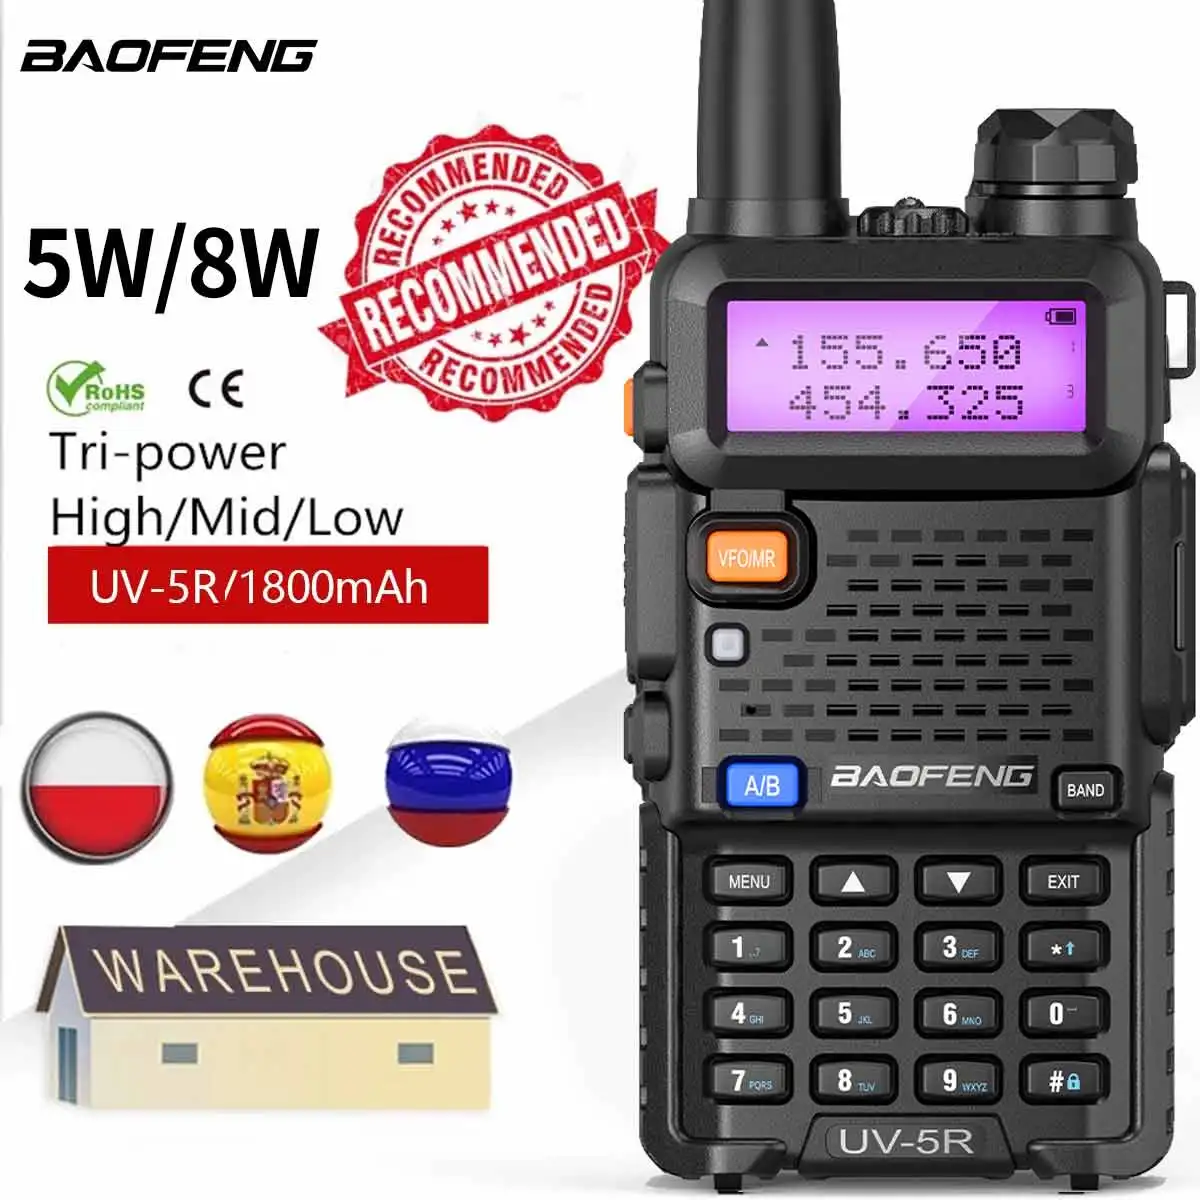 Baofeng-UV-5R Powerful Walkie Talkie, Dual Band, Rádio Bidirecional, Alta  Potência, Longo Alcance, Portátil, Hunting, CB, 8W, 5W, 8W, 16km  AliExpress